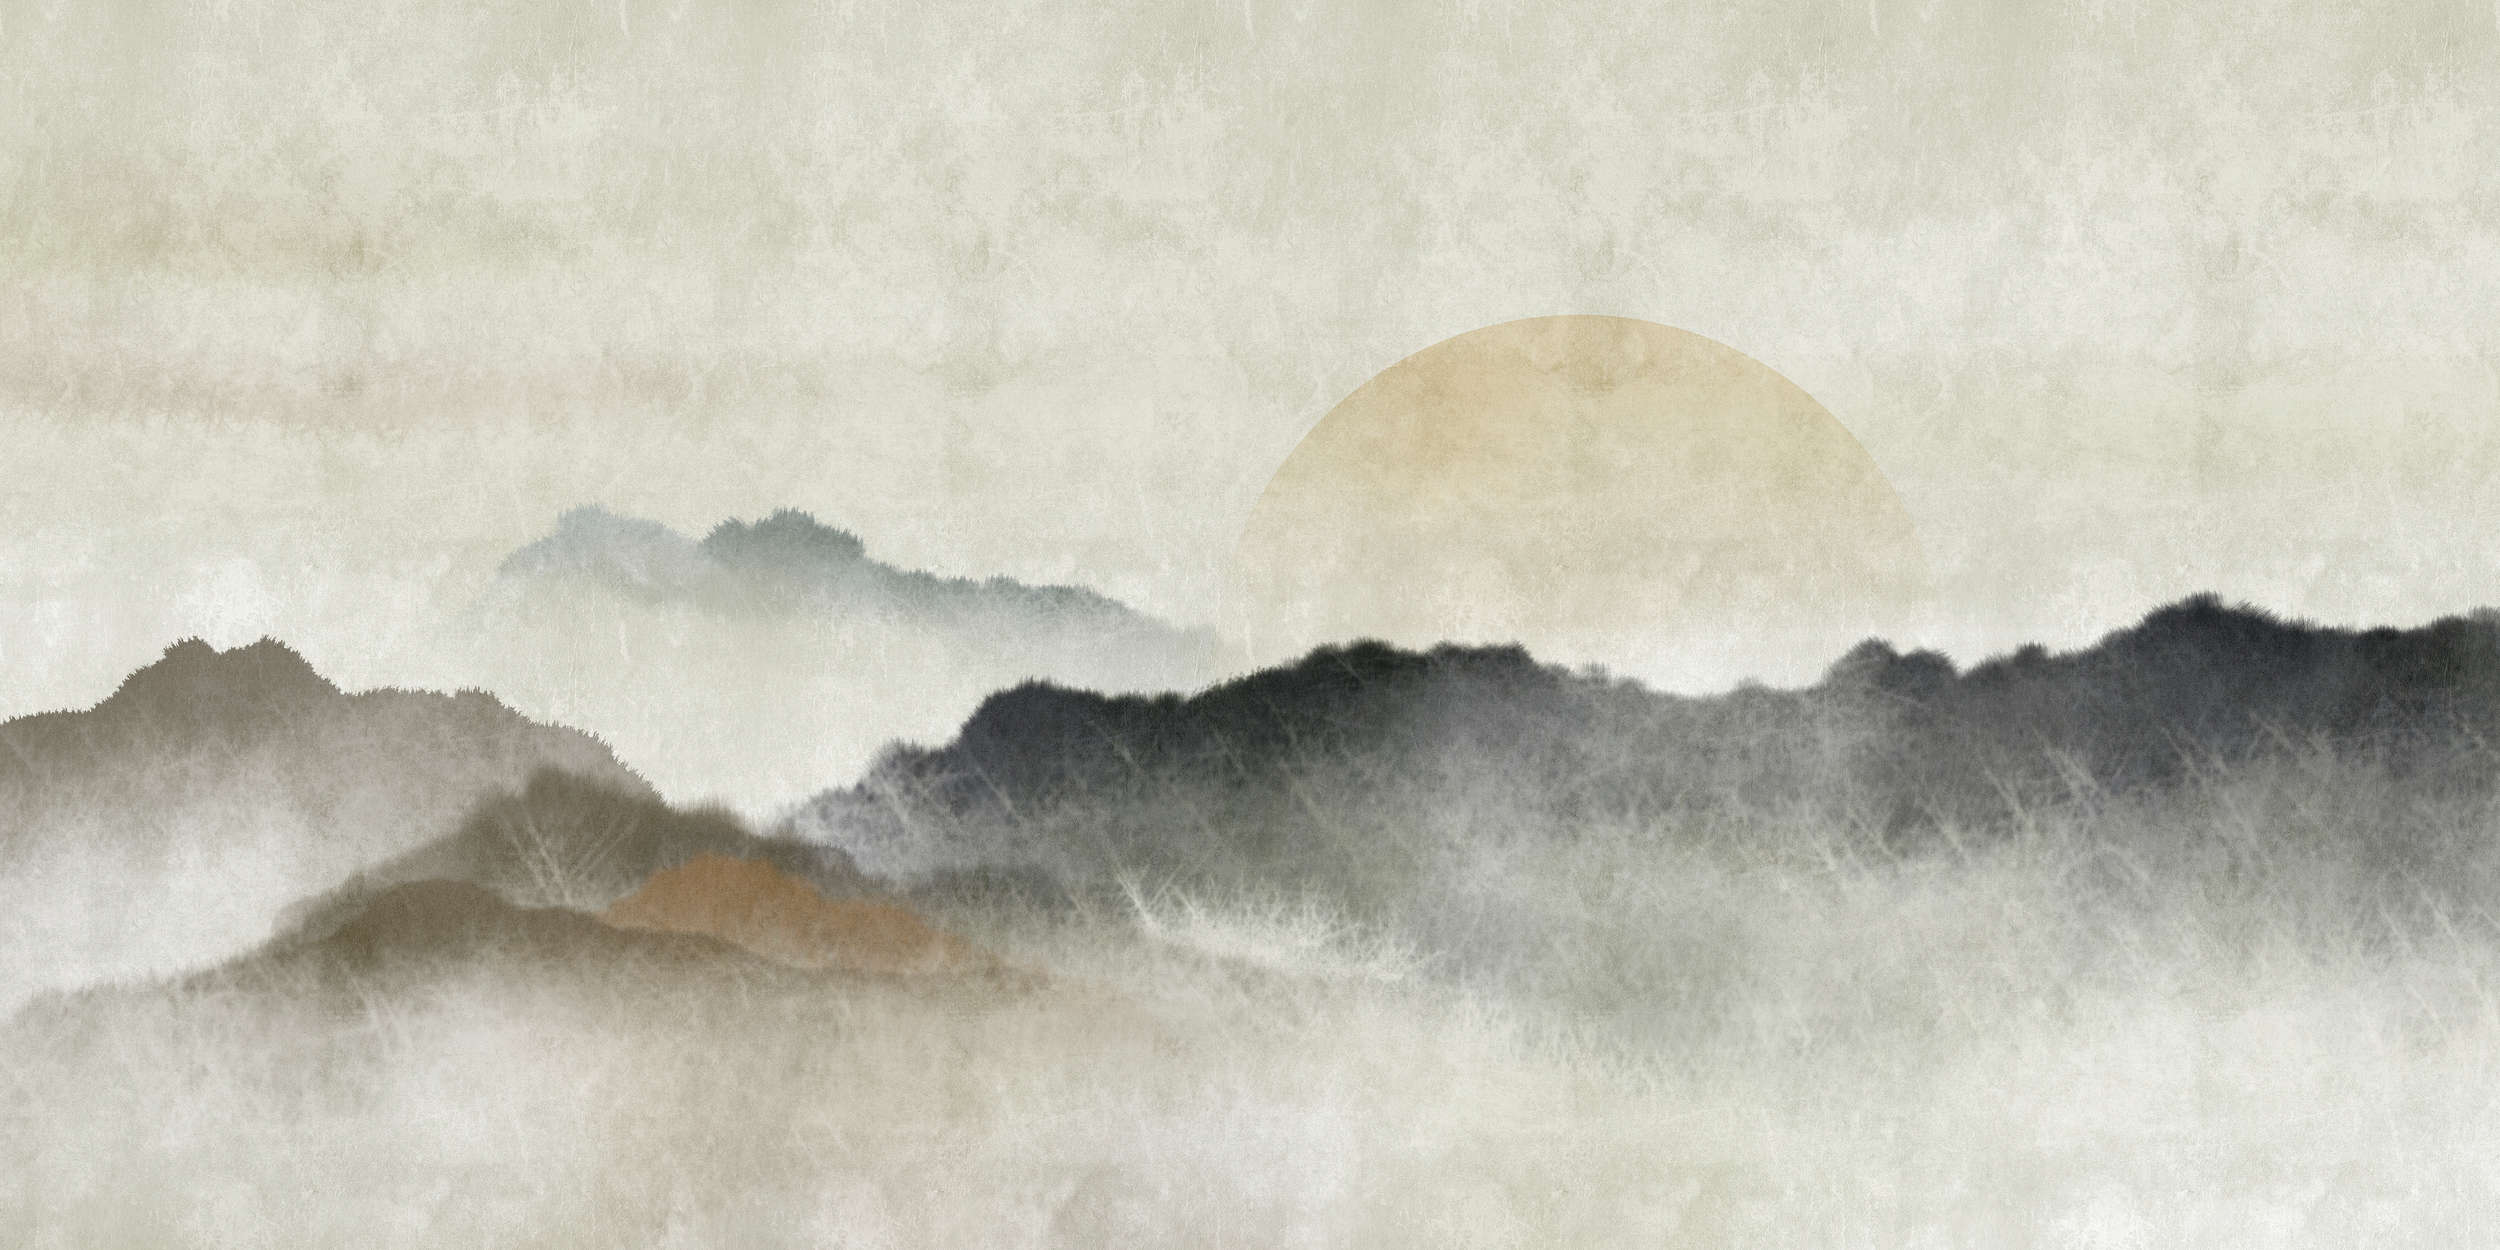             Akaishi 1 - Mural Impresión asiática Cordillera al amanecer
        